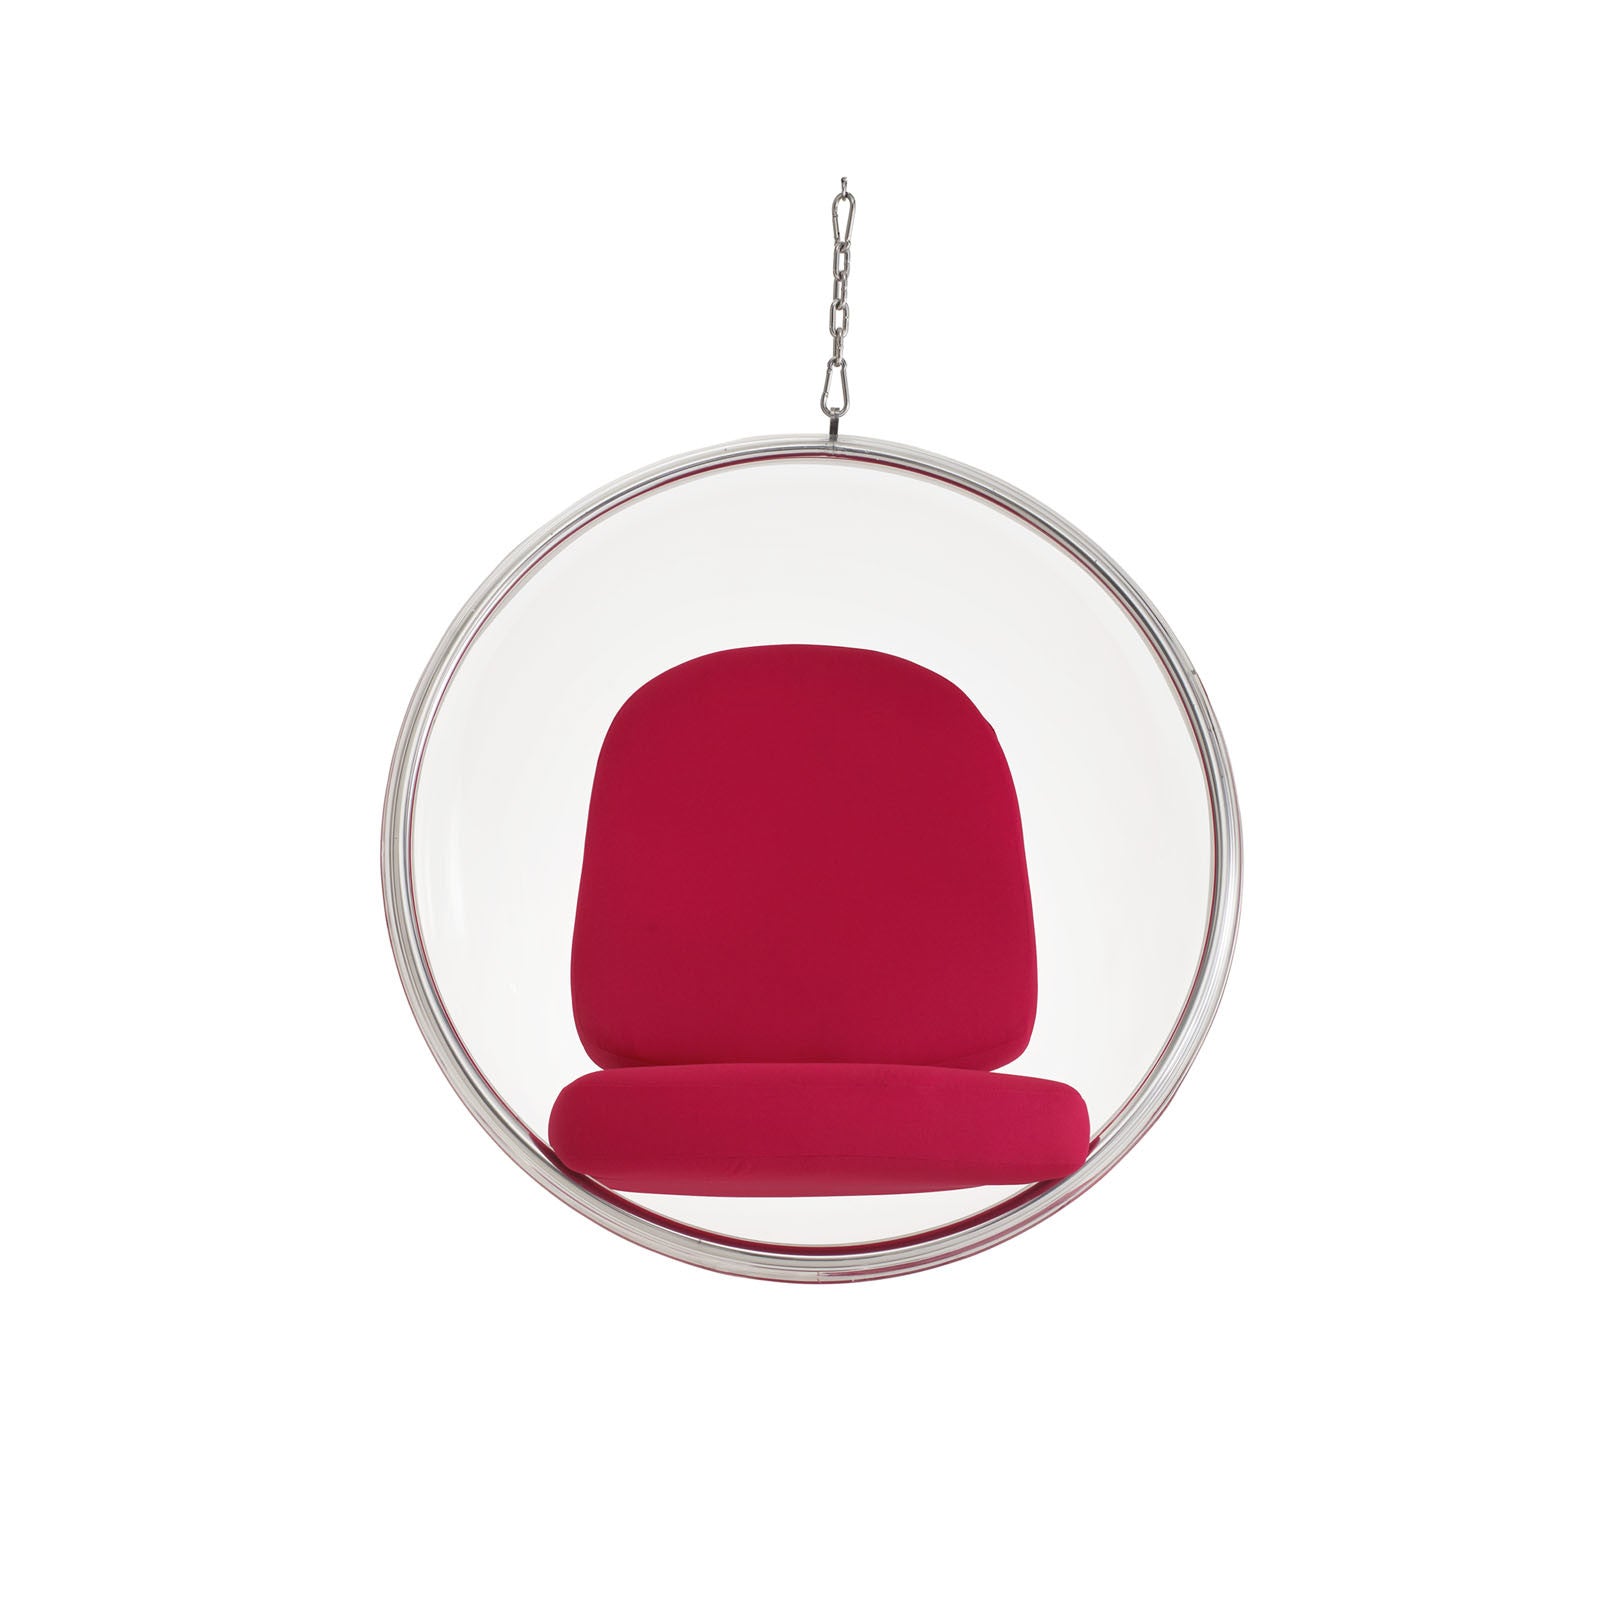 Modway Furniture Modern Ring Lounge Chair EEI-111-Minimal & Modern